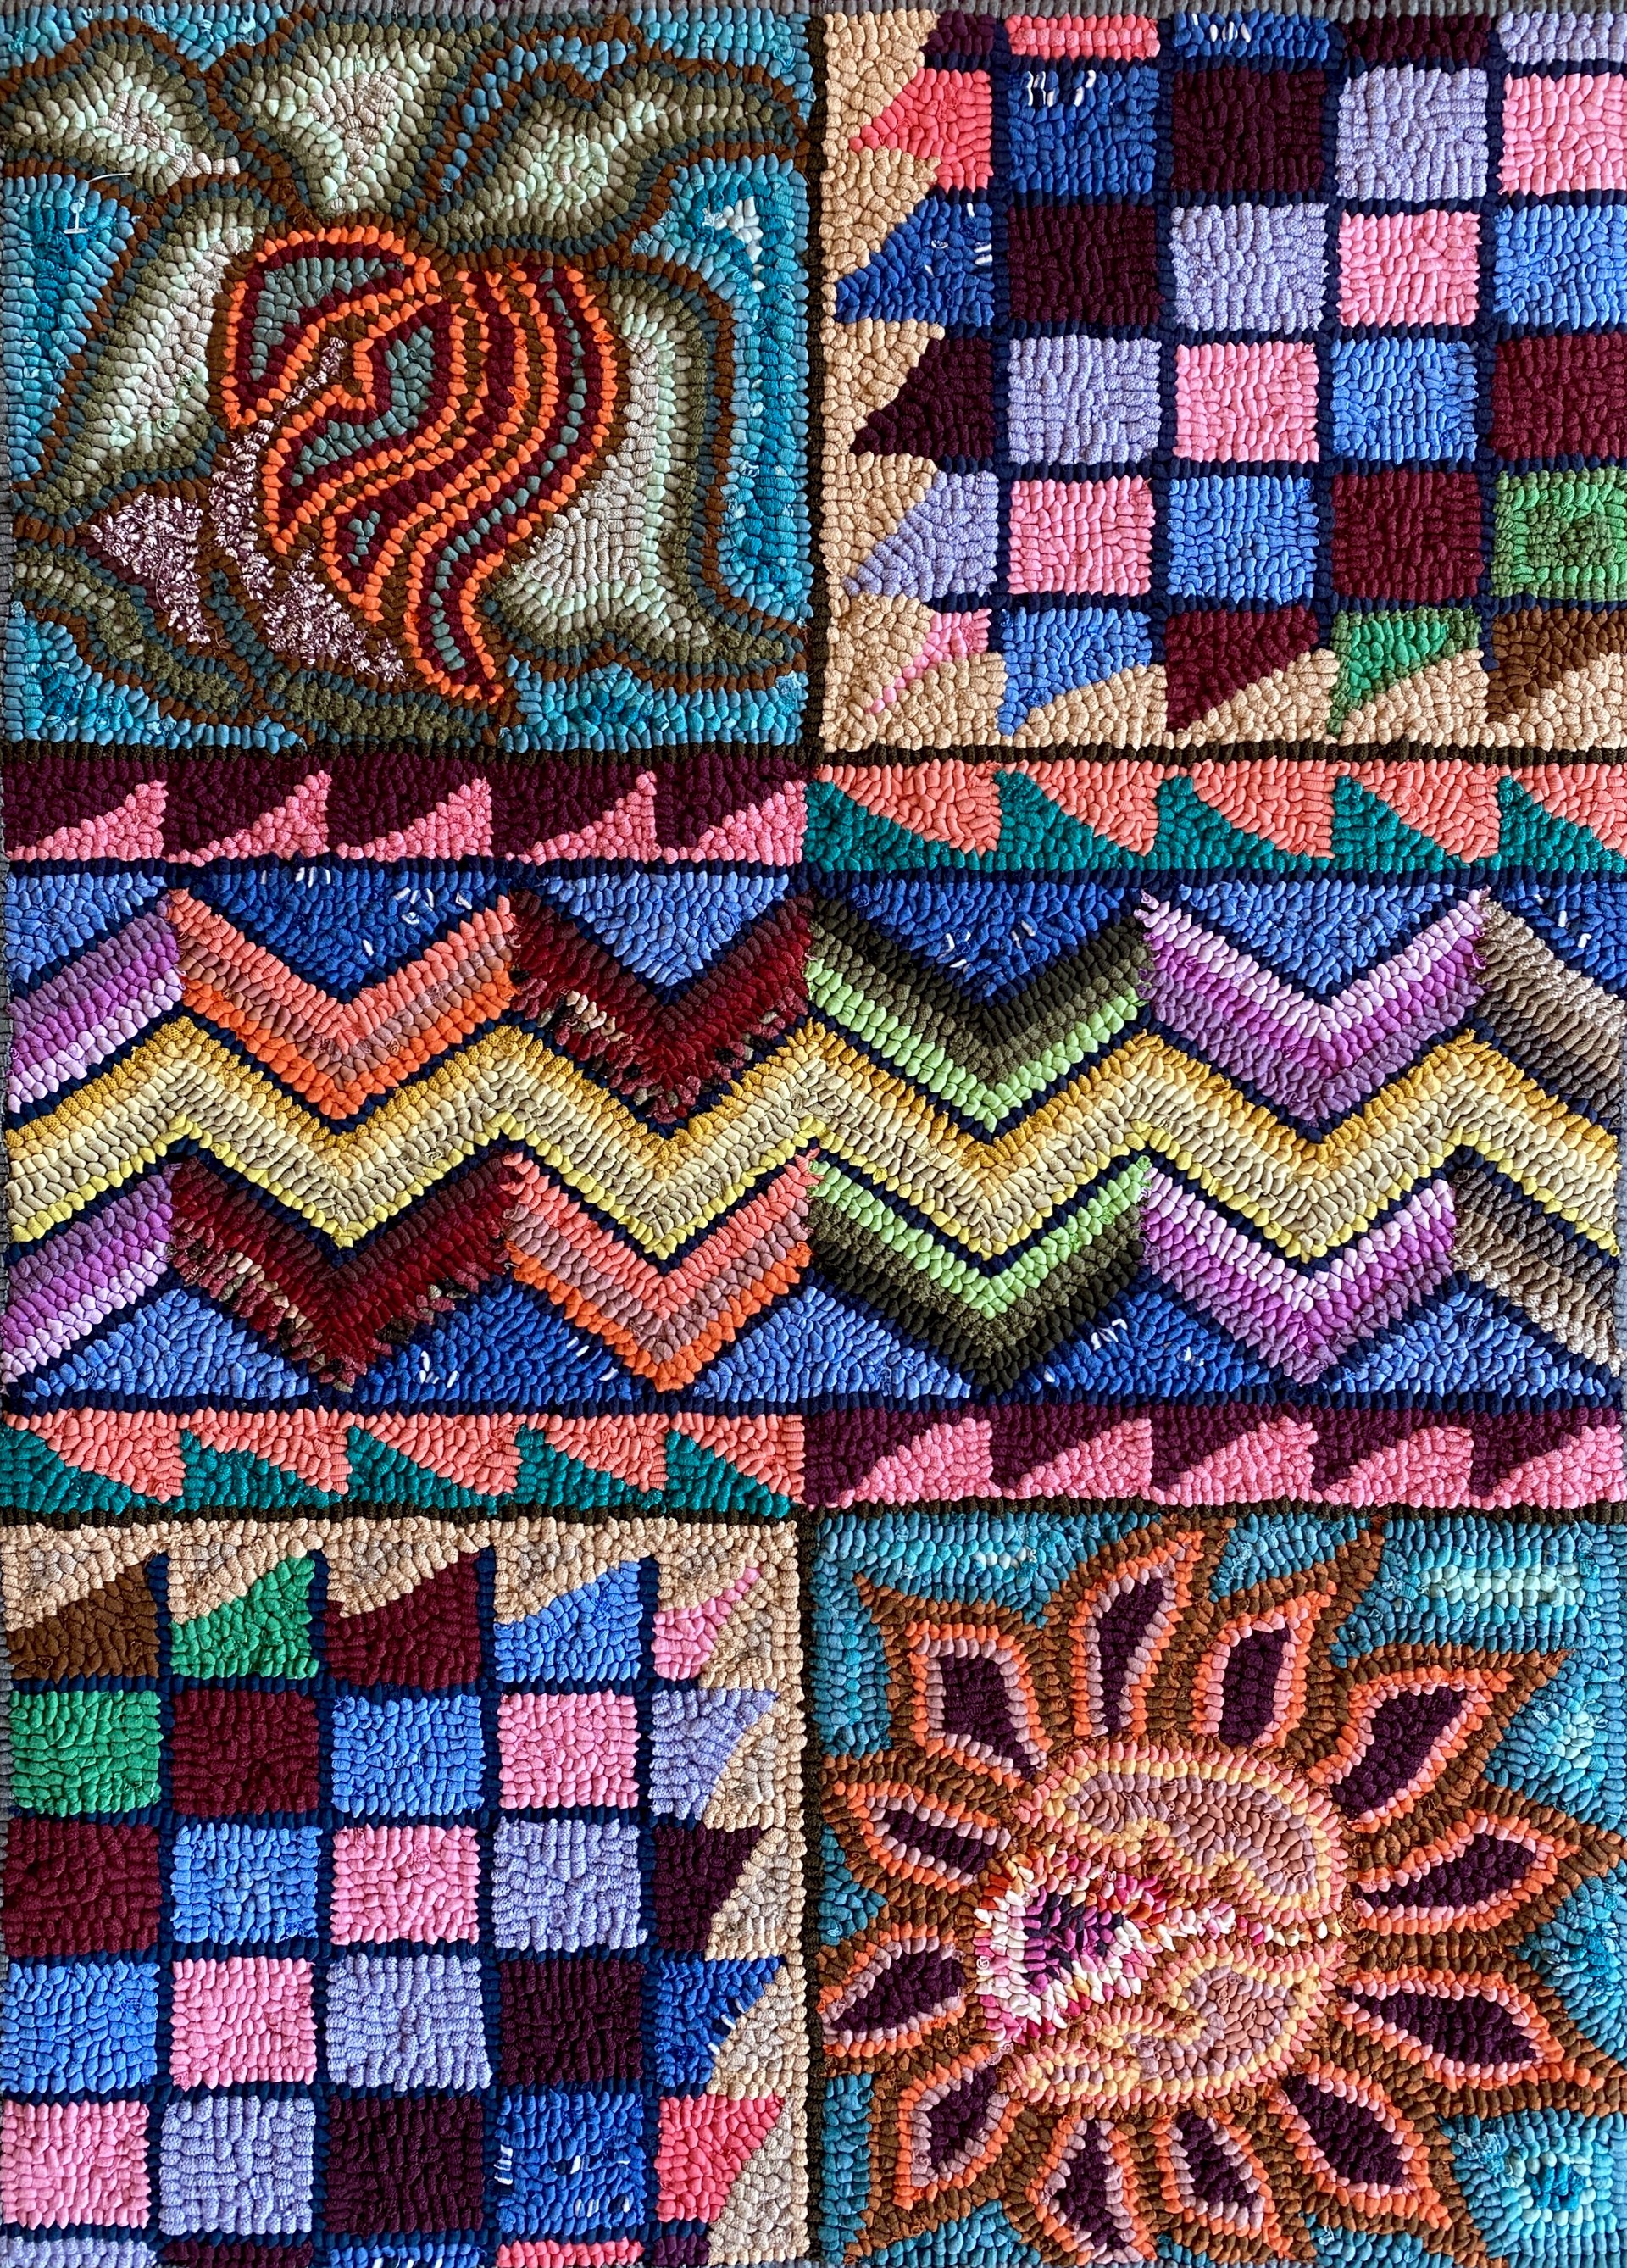 La danza del sol y los trajes ancestrales (The dance of the sun and the ancestral costume) by Multicolores